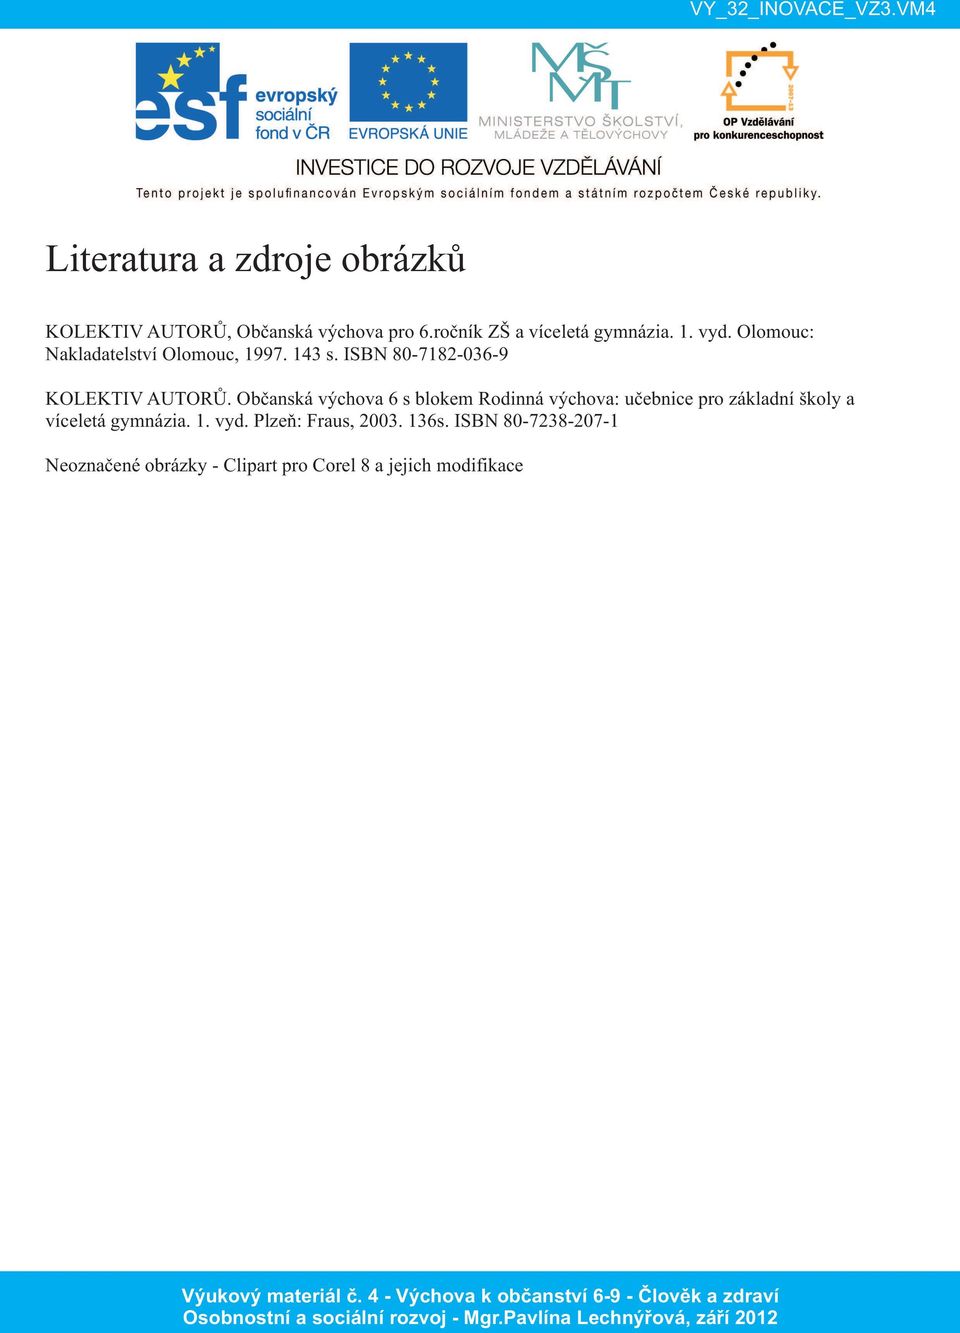 Občanská výchova 6 s blokem Rodinná výchova: učebnice pro základní školy a víceletá gymnázia. 1.